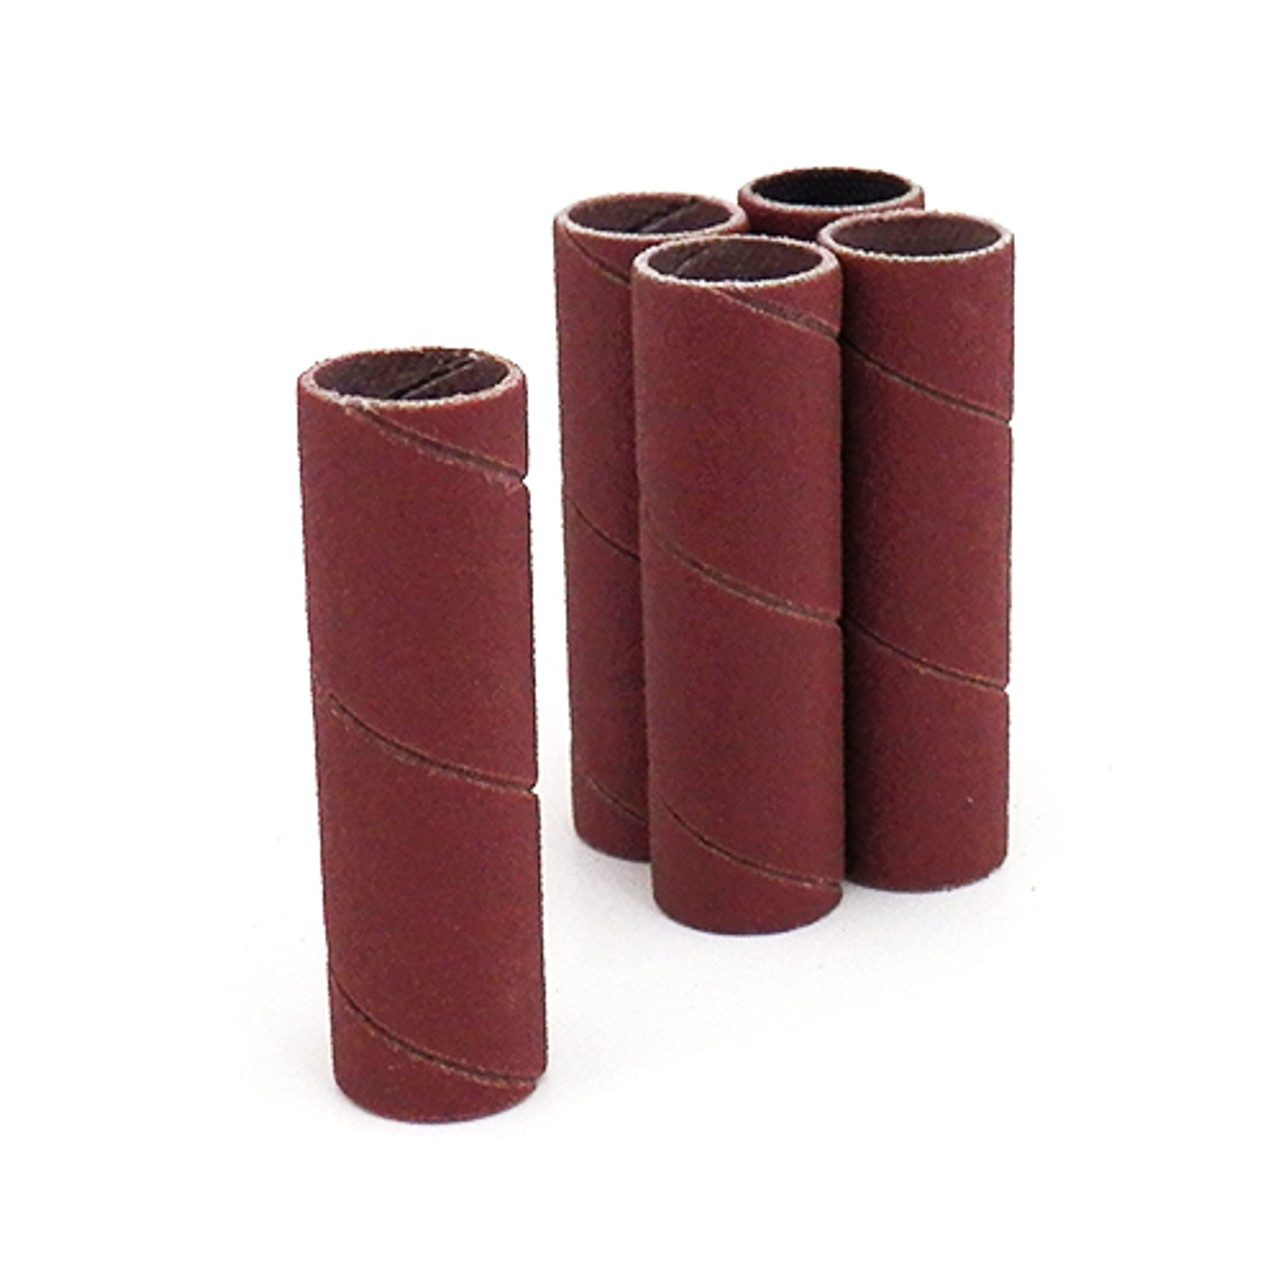 Klingspor Abrasives Aluminum Oxide Sanding Sleeves, 1/2"X 2" 150 Grit, 5pk